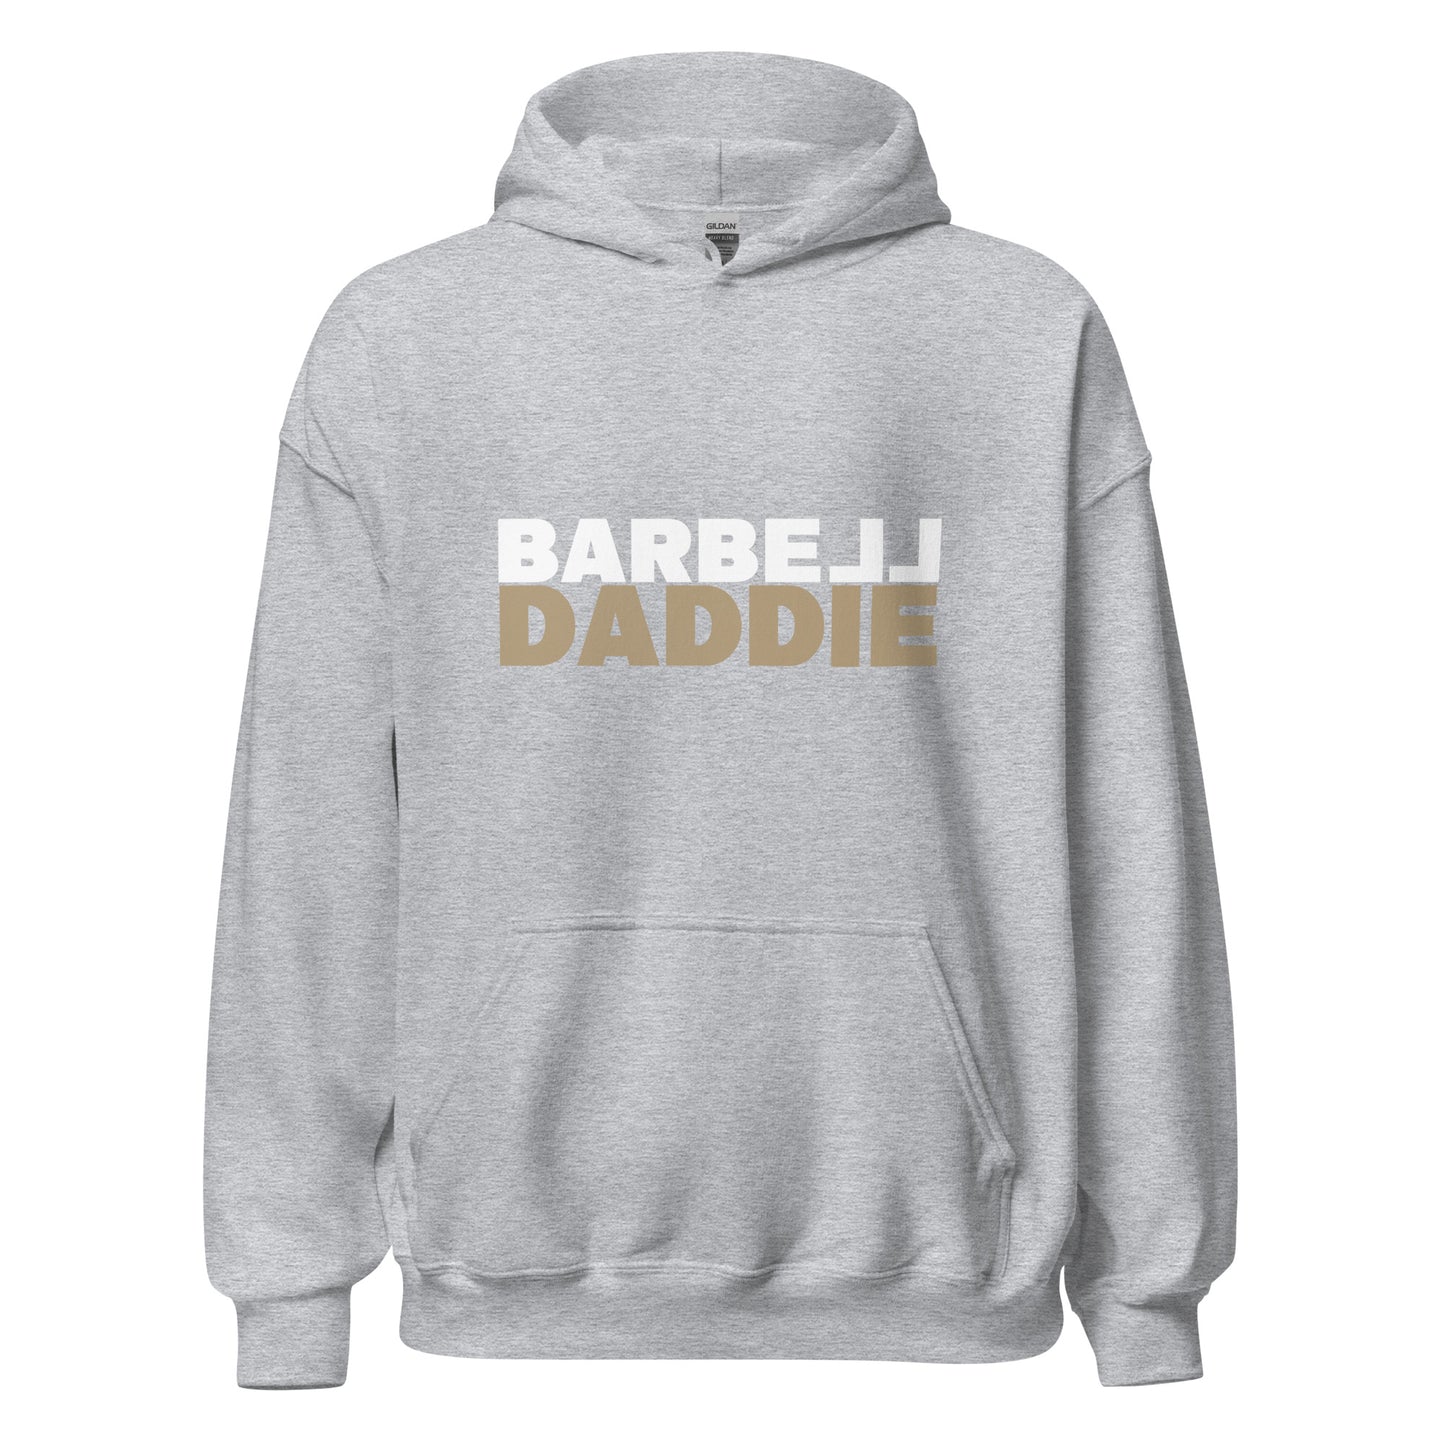 Barbell Daddie Unisex Hoodie